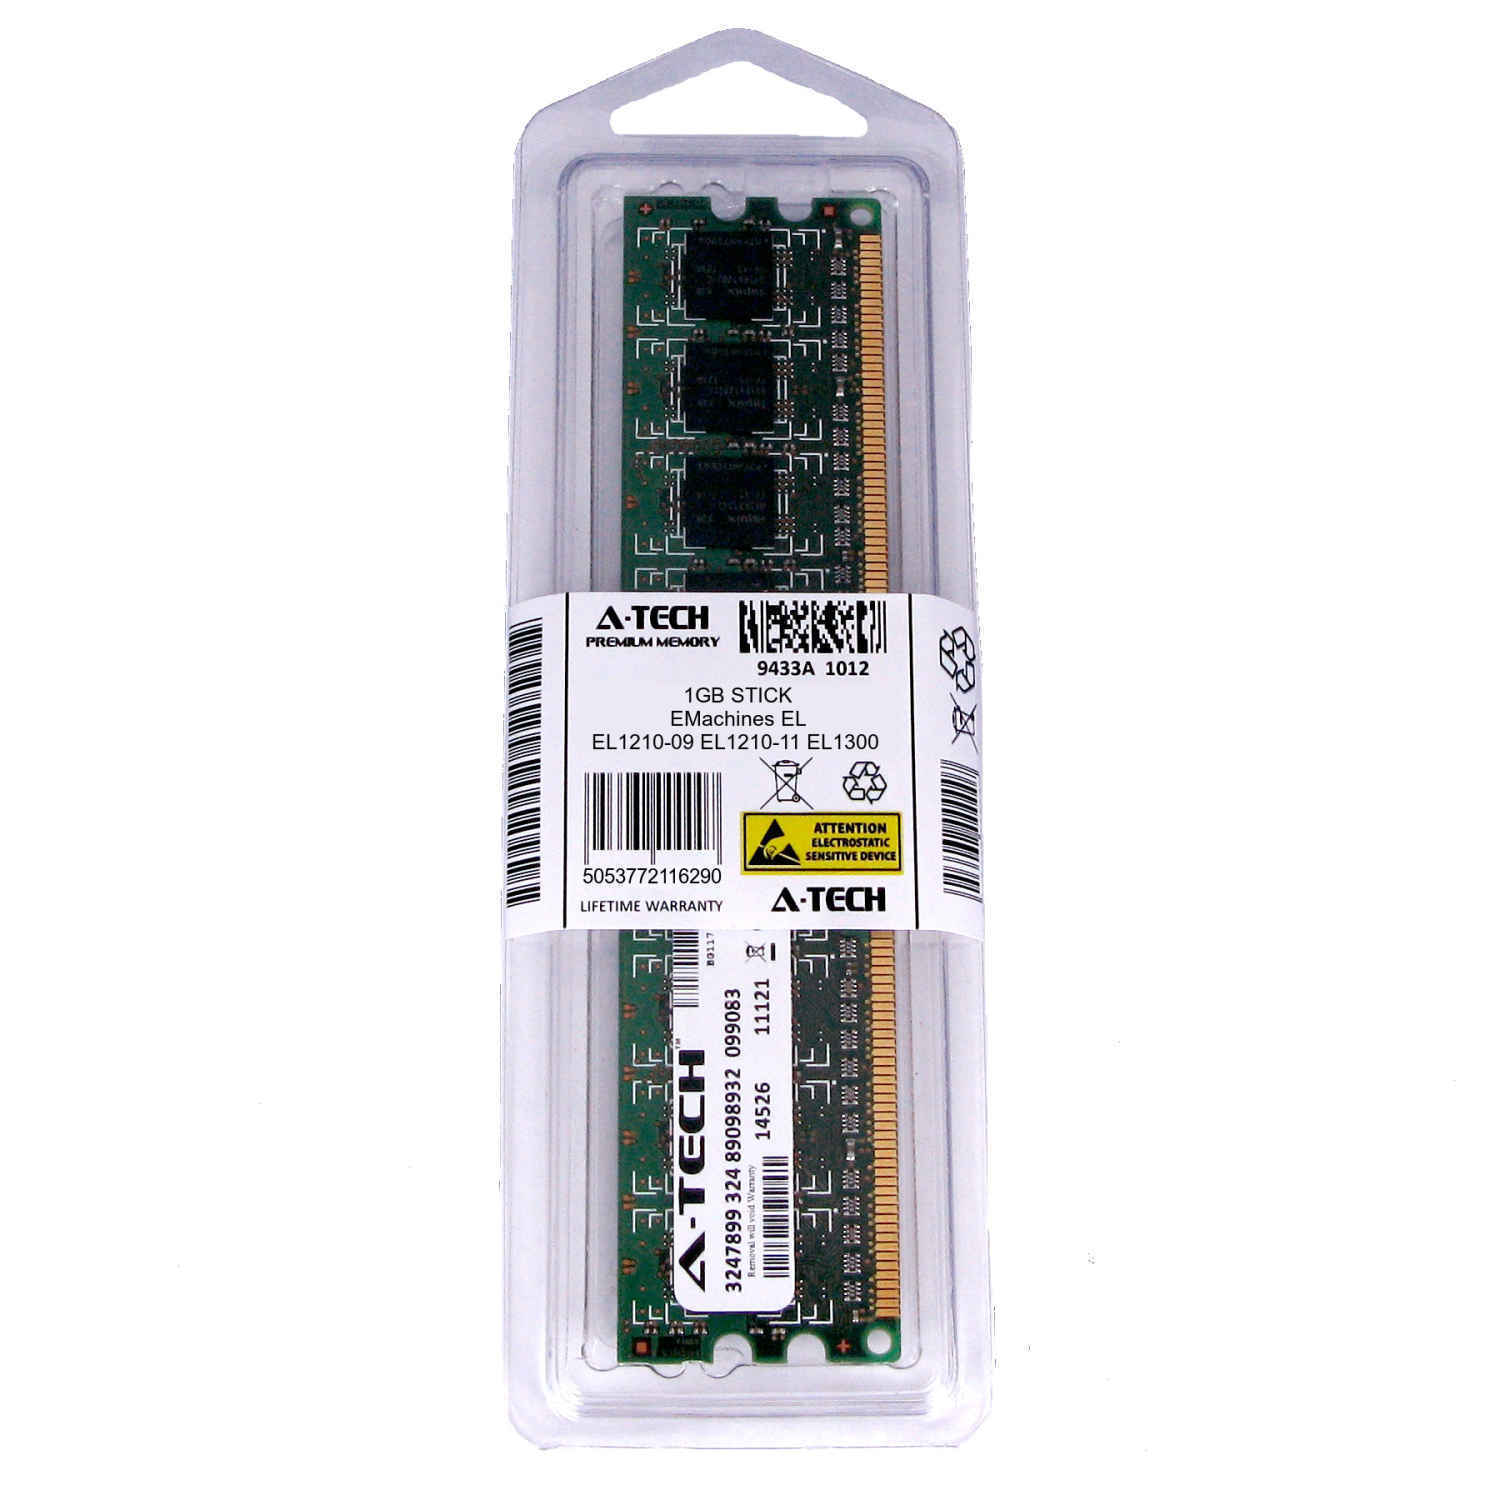 1GB DIMM EMachines EL1210-09 EL1210-11 EL1300 EL1300G EL1300G-01w Ram Memory